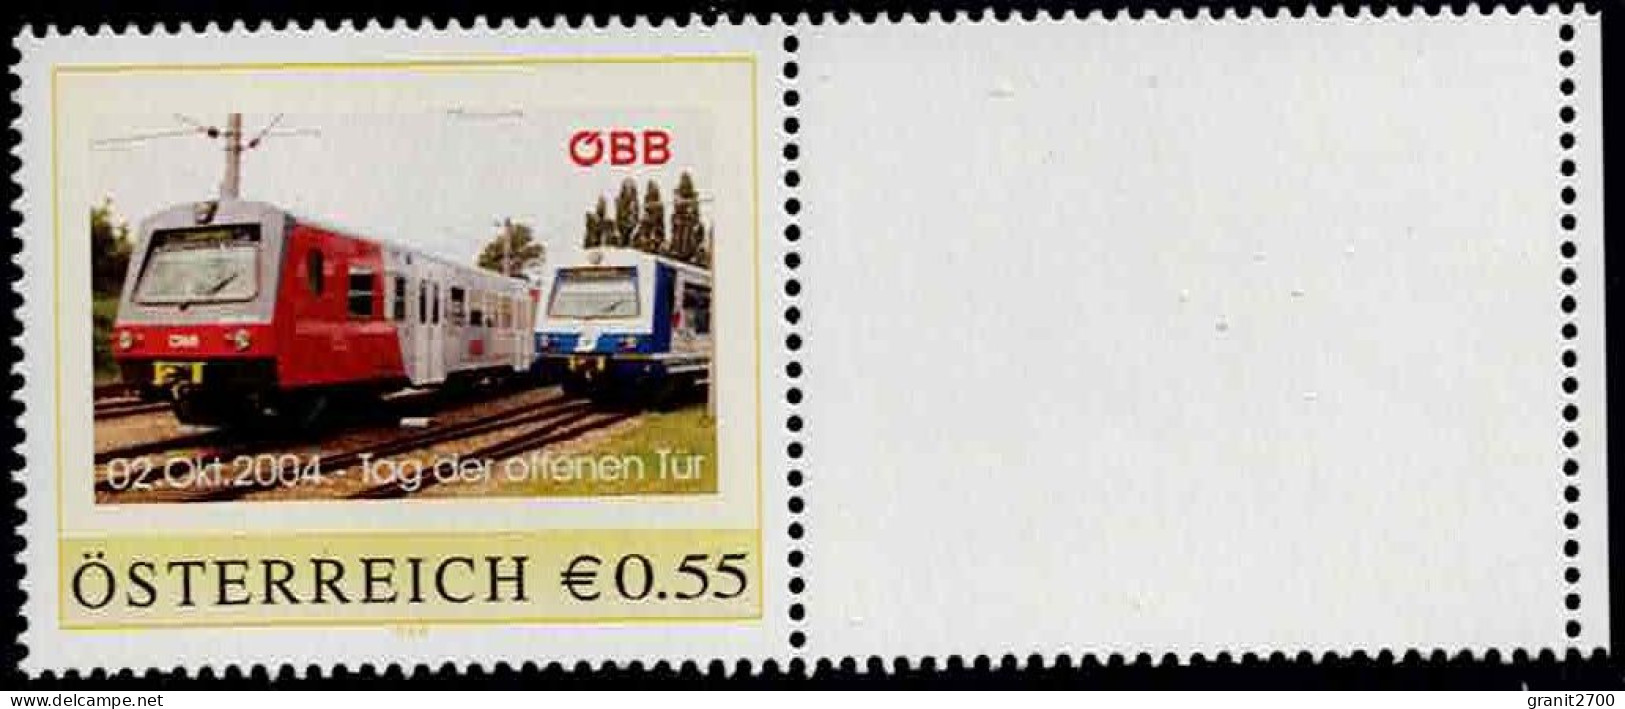 PM ÖBB Tag Der Offenen Tür  Ex Bogen Nr. 8002728  Postfrisch - Personalisierte Briefmarken